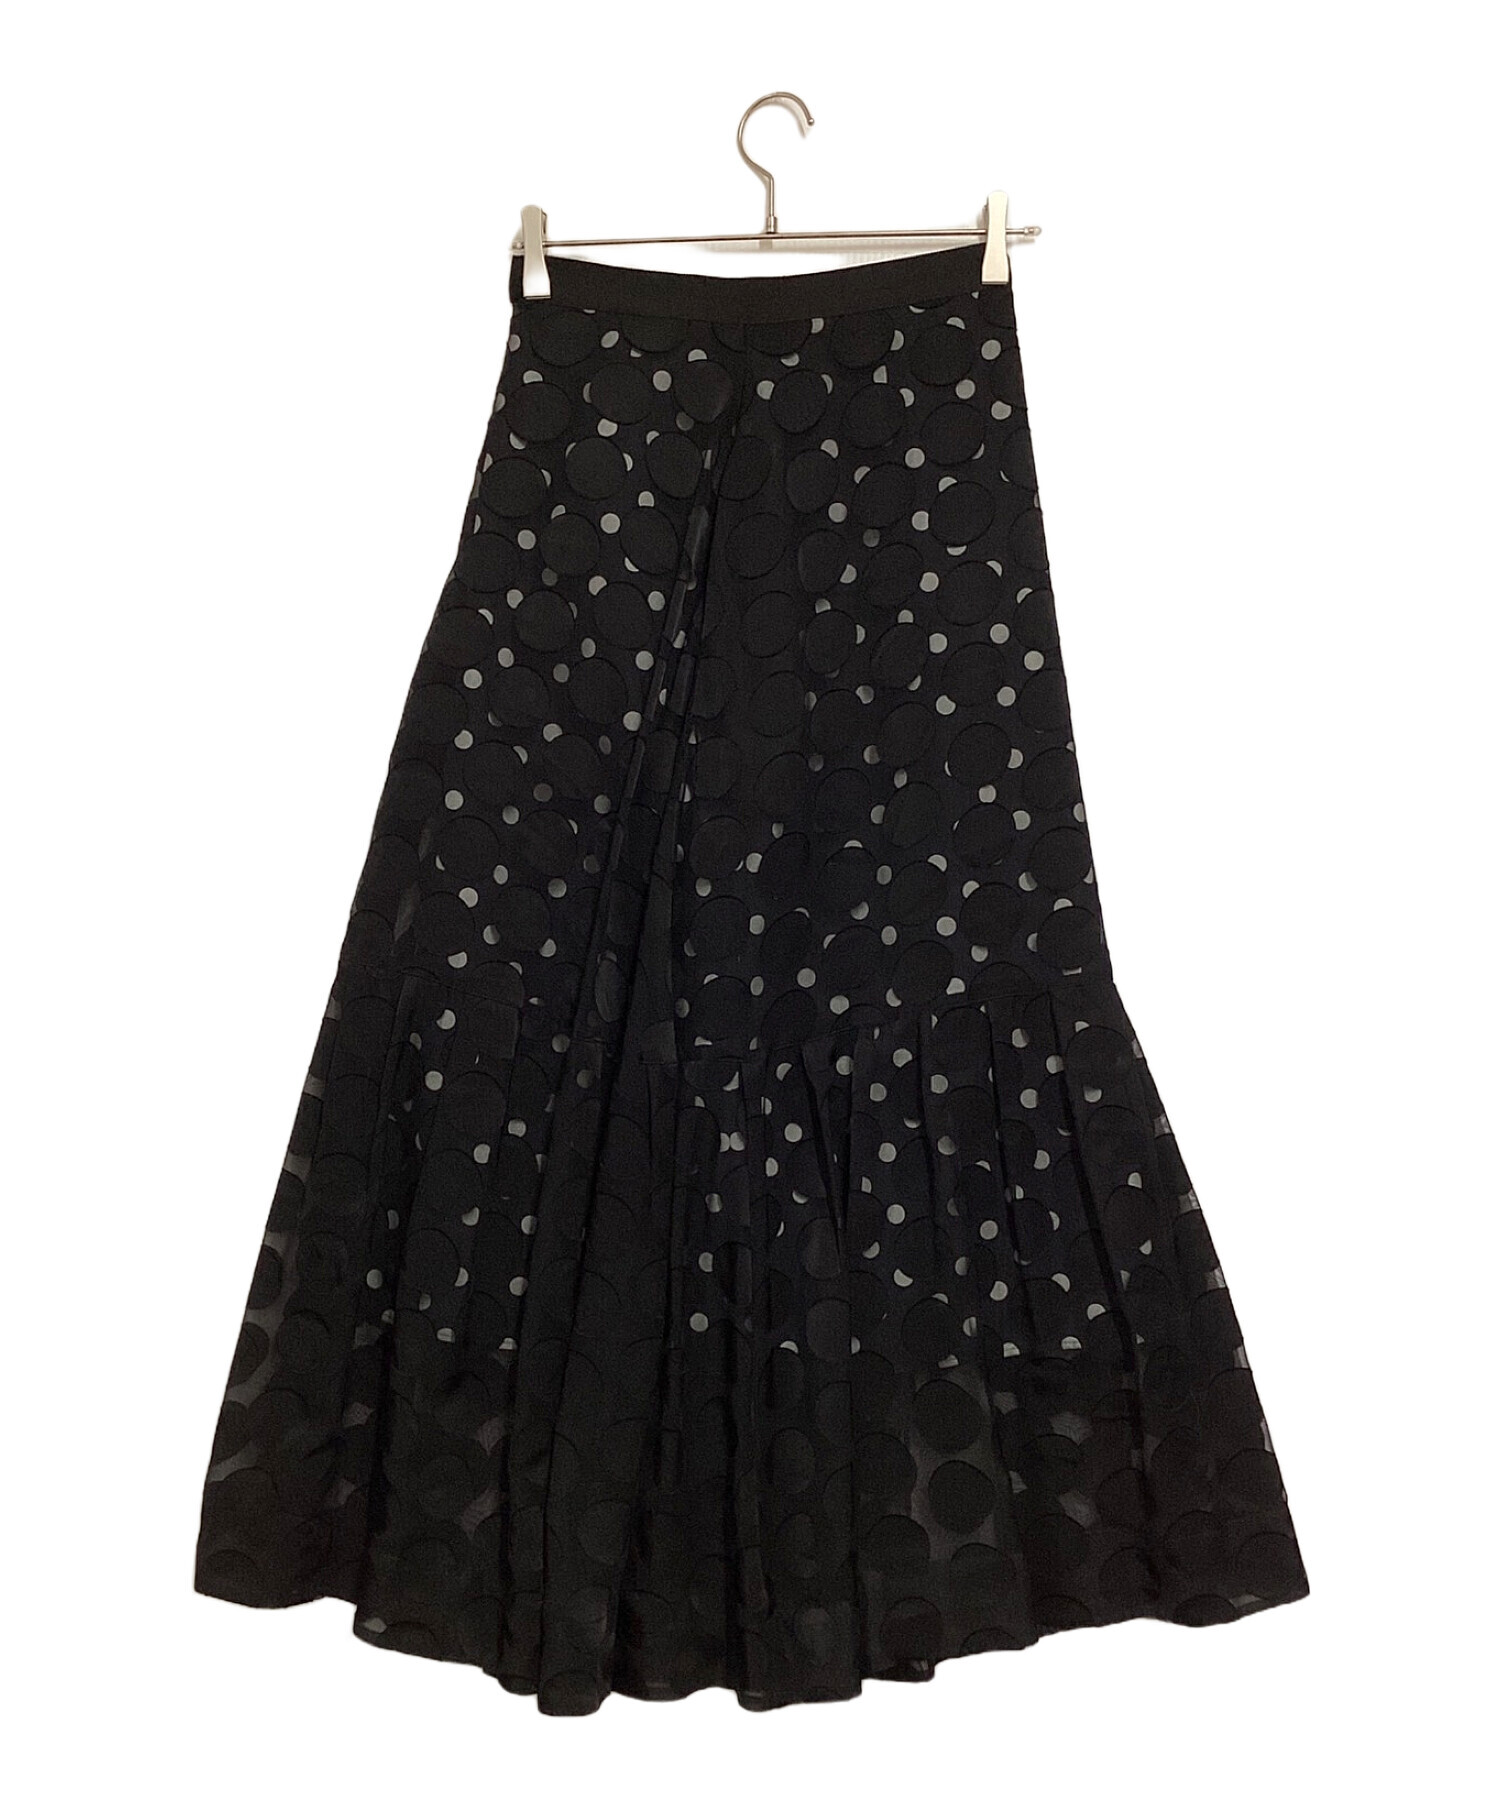 LE CIEL BLEU (ルシェルブルー) Dot Layered Maxi Skirt ブラック サイズ:36